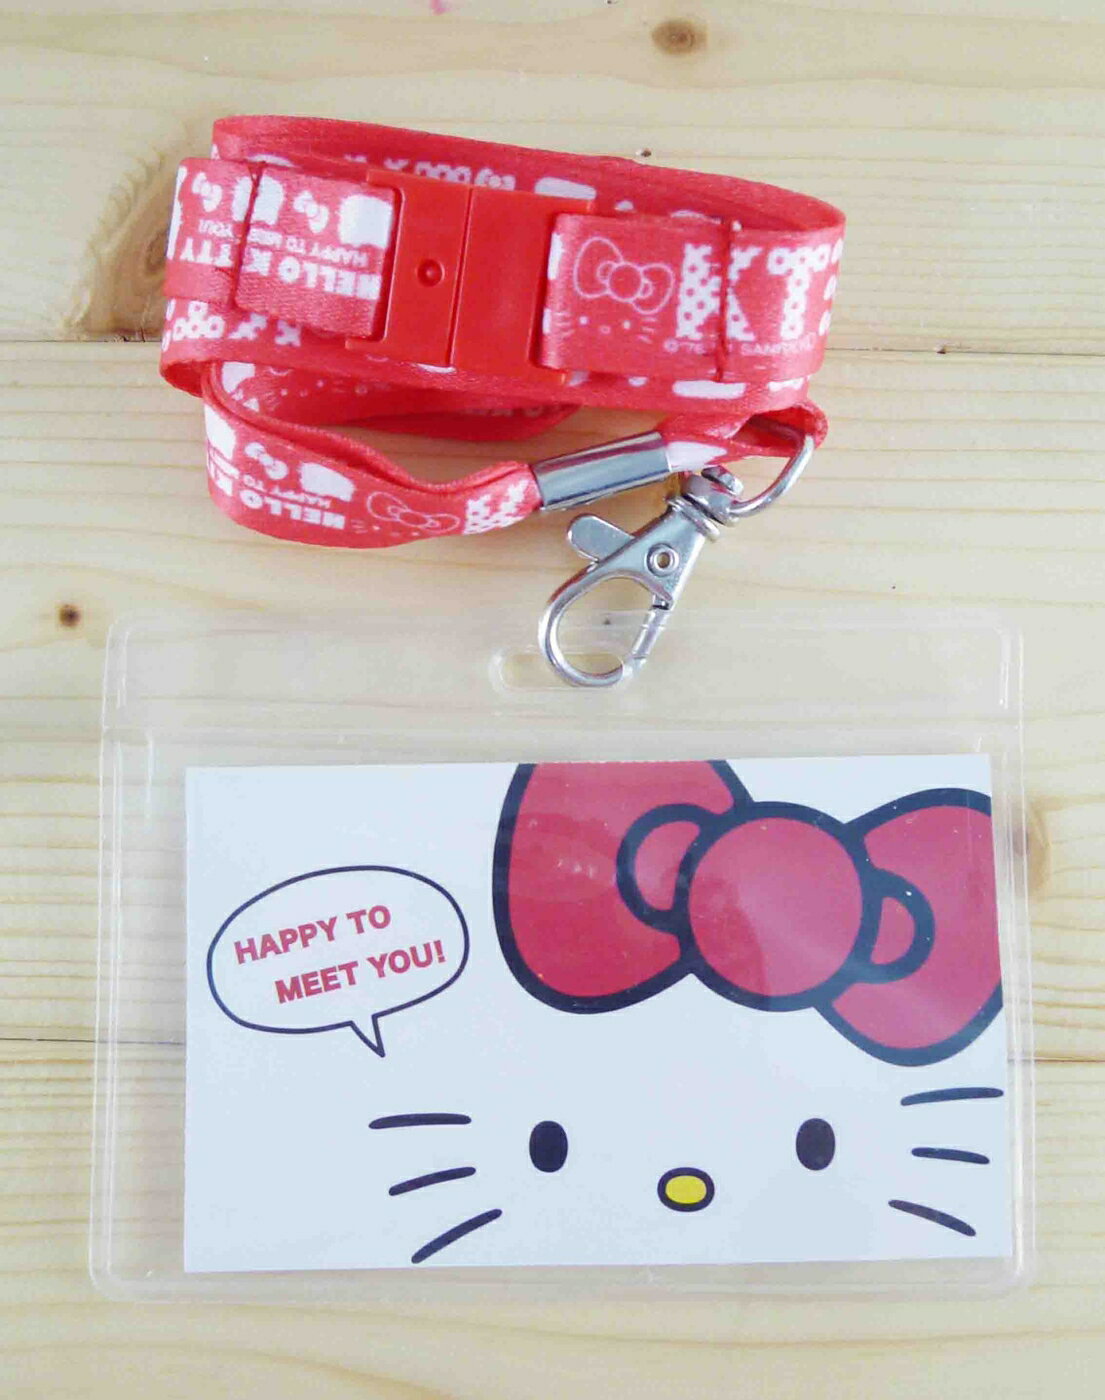 【震撼精品百貨】Hello Kitty 凱蒂貓 KITTY證件套附繩-英文字圖案-紅色 震撼日式精品百貨